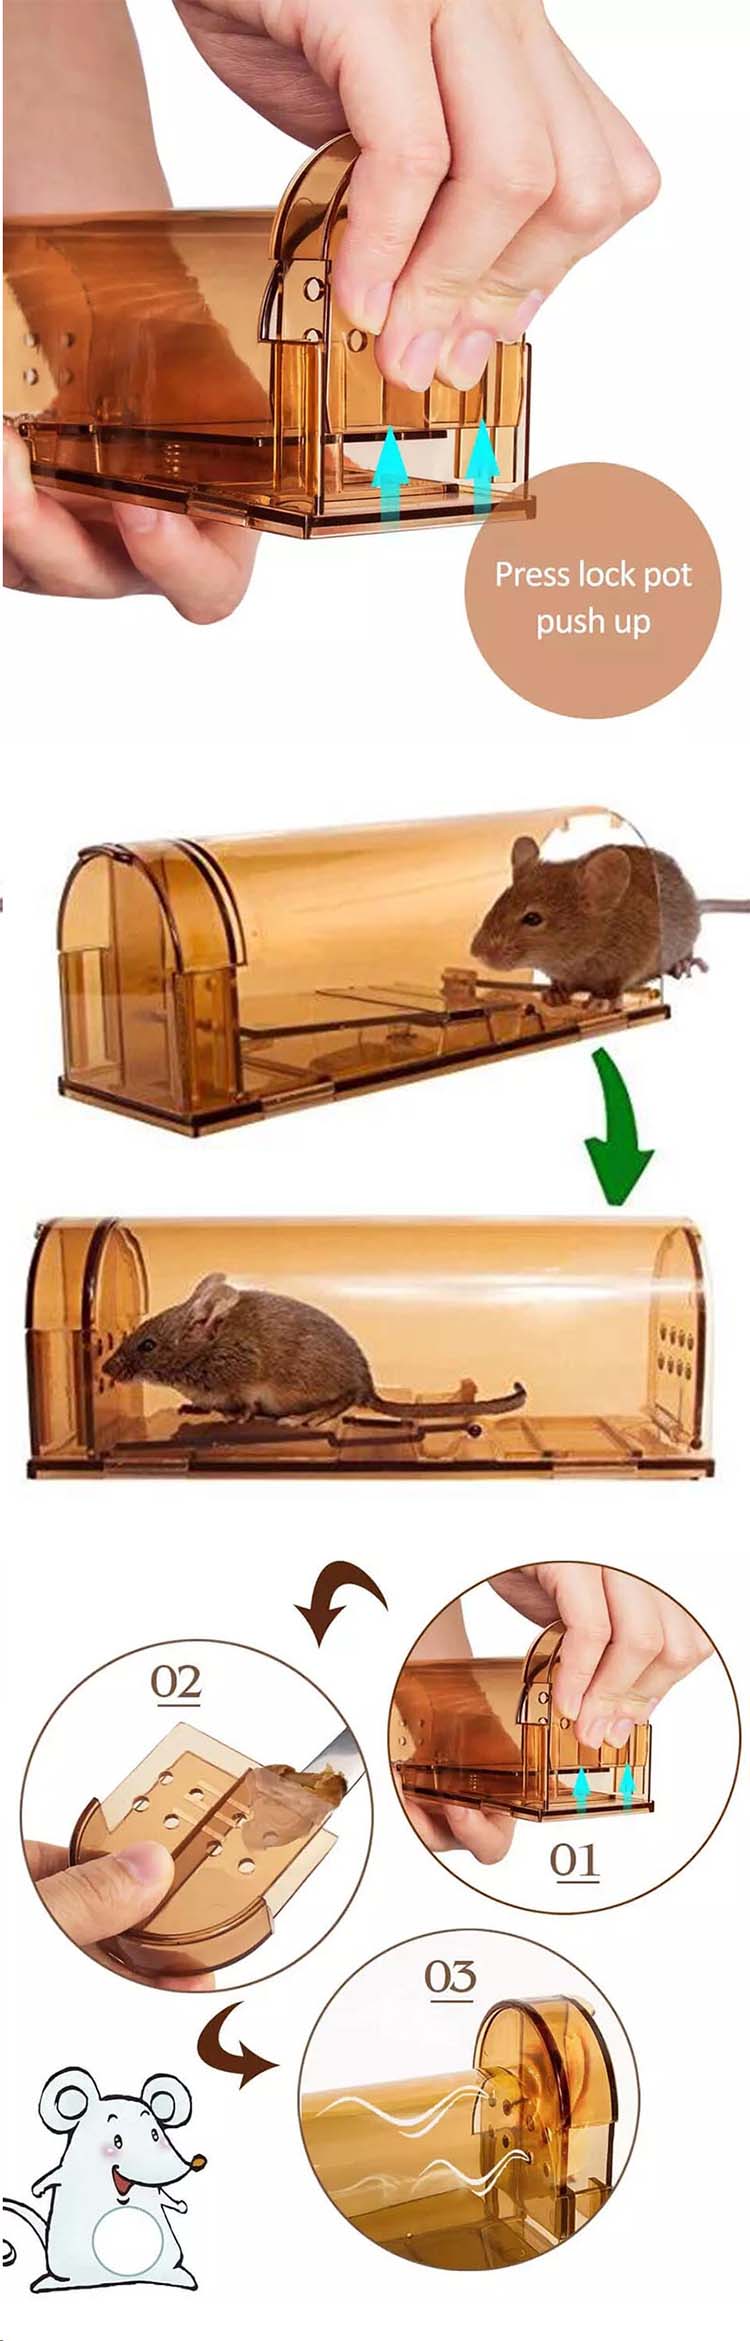 2019 آمازون فروش داغ خانگی پلاستیکی انسانی زنده گرفتن موش هوشمند تله موش تله موش قفس03